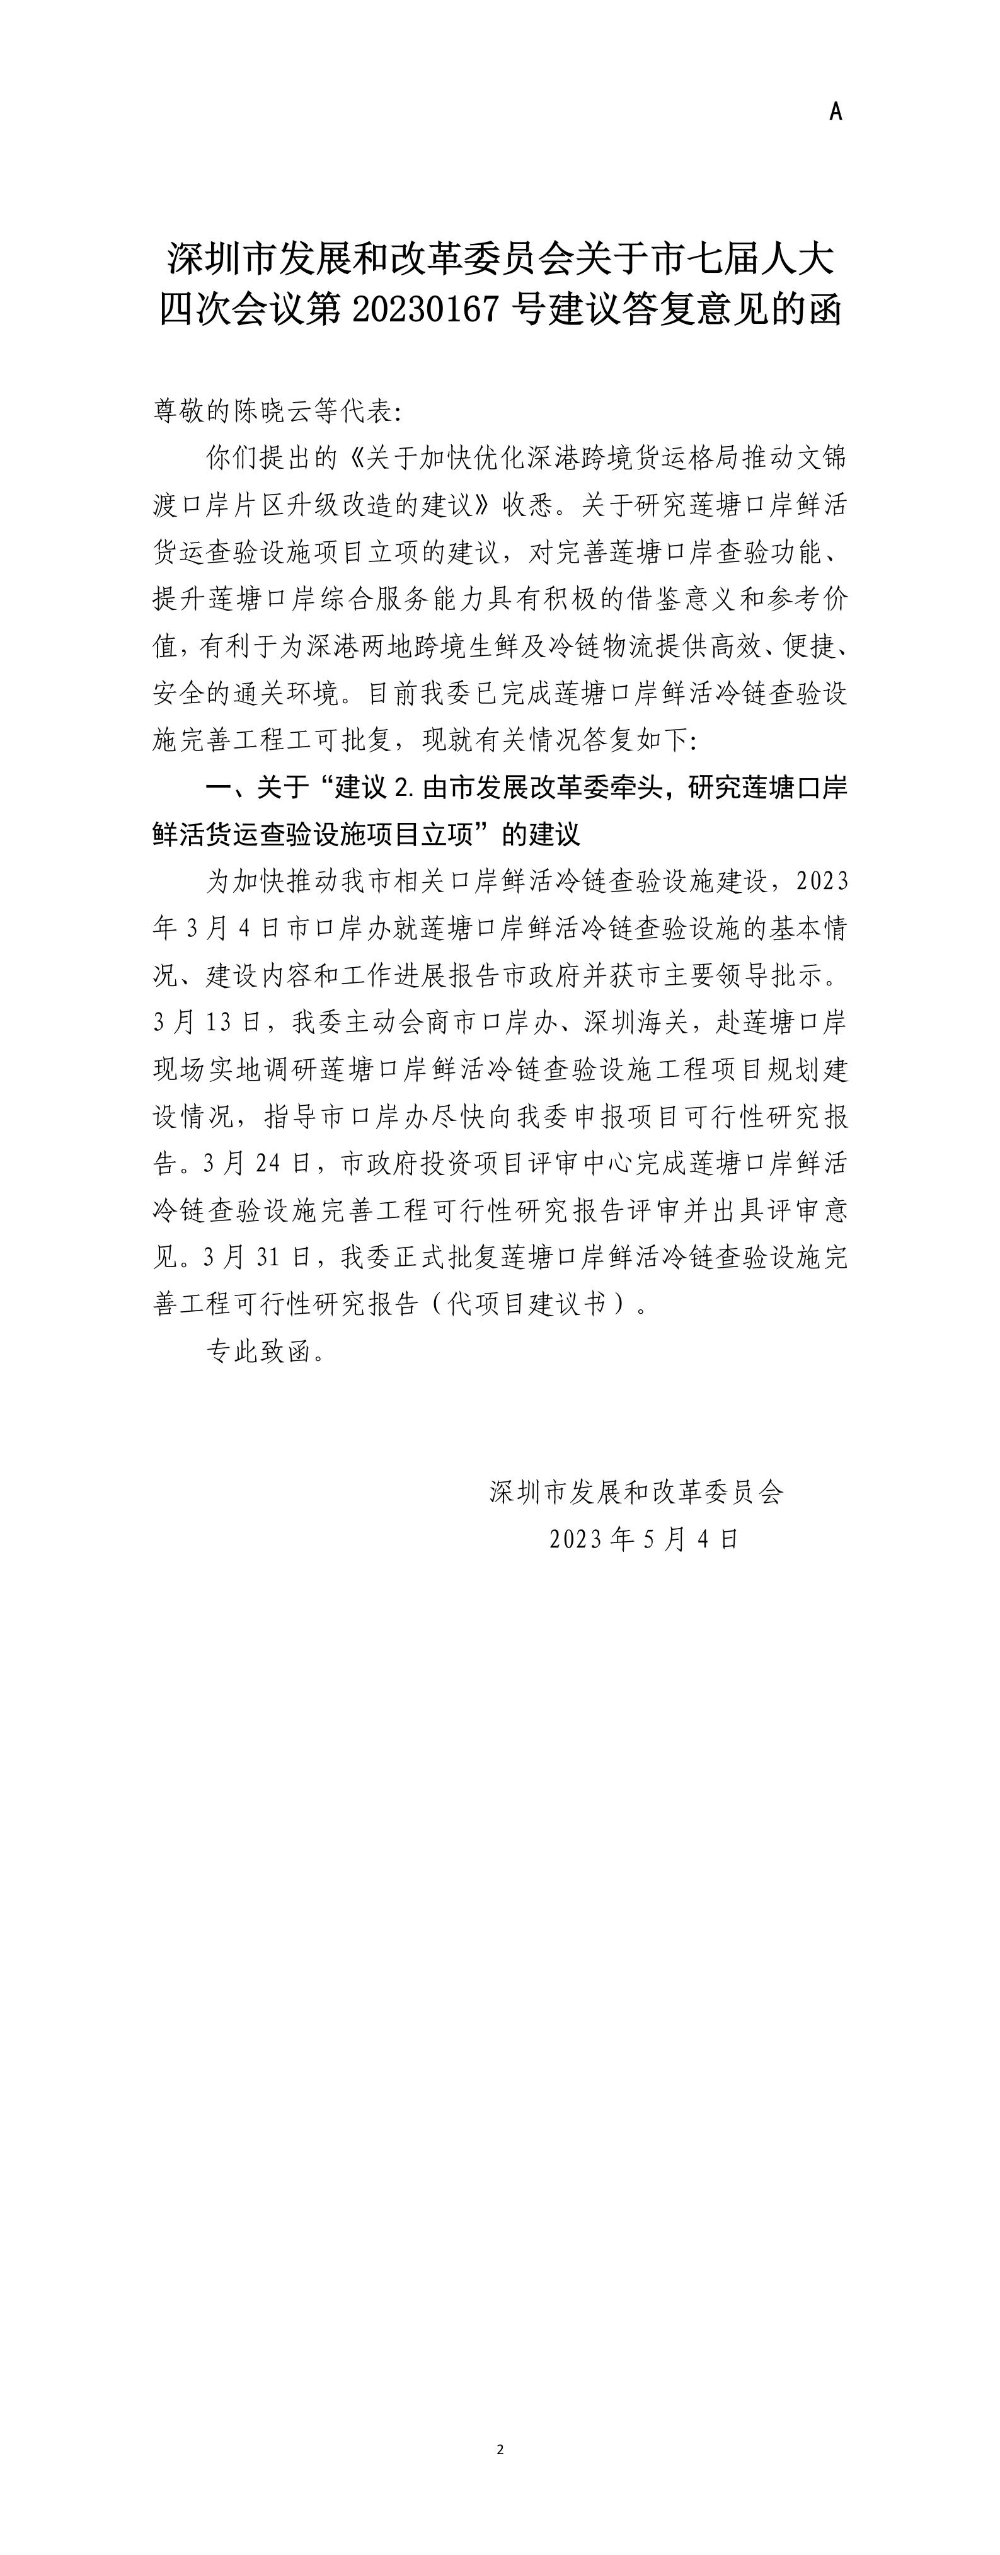 深圳市发展和改革委员会关于市七届人大四次会议第20230167号建议答复意见的函.jpg